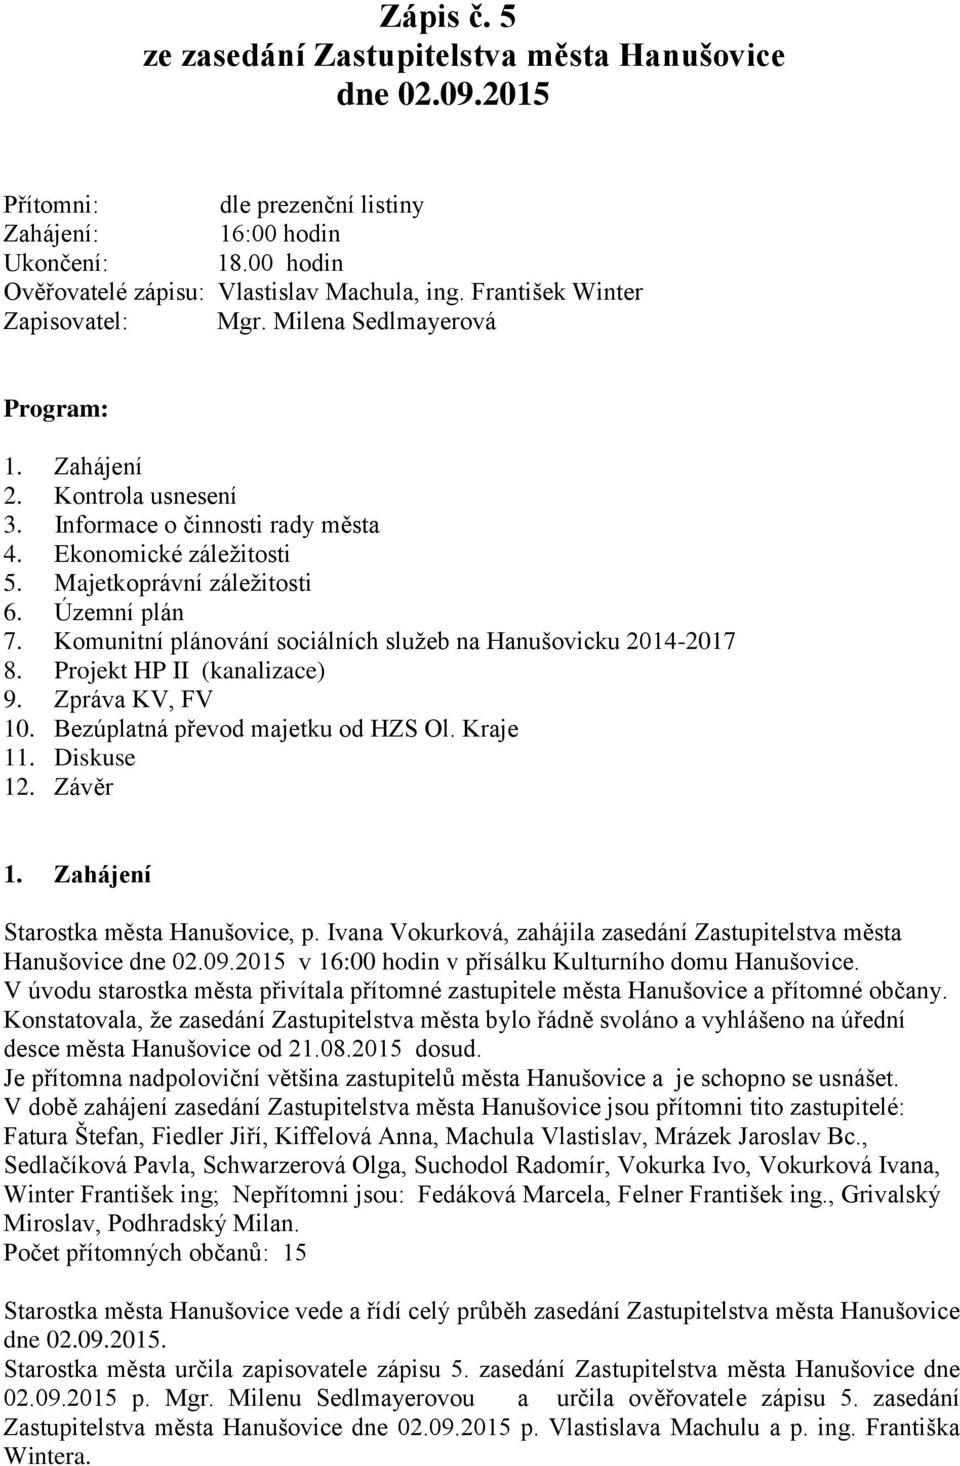 Územní plán 7. Komunitní plánování sociálních služeb na Hanušovicku 2014-2017 8. Projekt HP II (kanalizace) 9. Zpráva KV, FV 10. Bezúplatná převod majetku od HZS Ol. Kraje 11. Diskuse 12. Závěr 1.